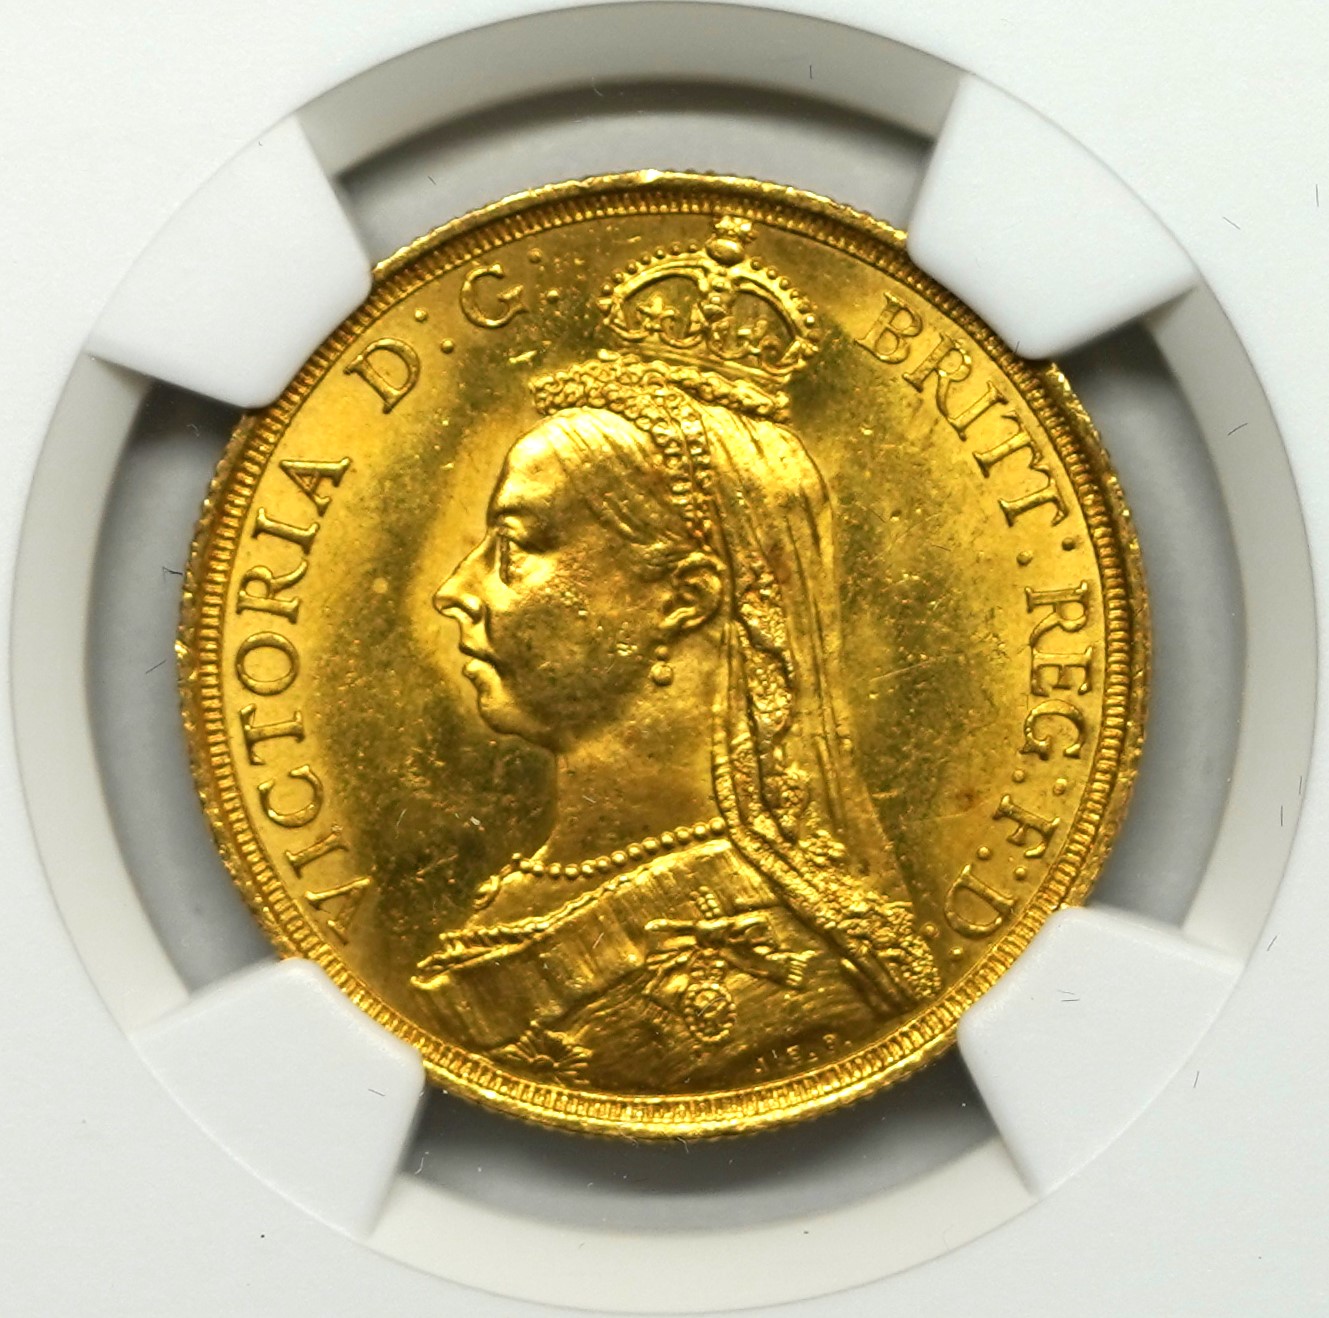 Sold】1887年 ヴィクトリア 2ポンド金貨 MS64 NGC | ソブリンパートナーズ